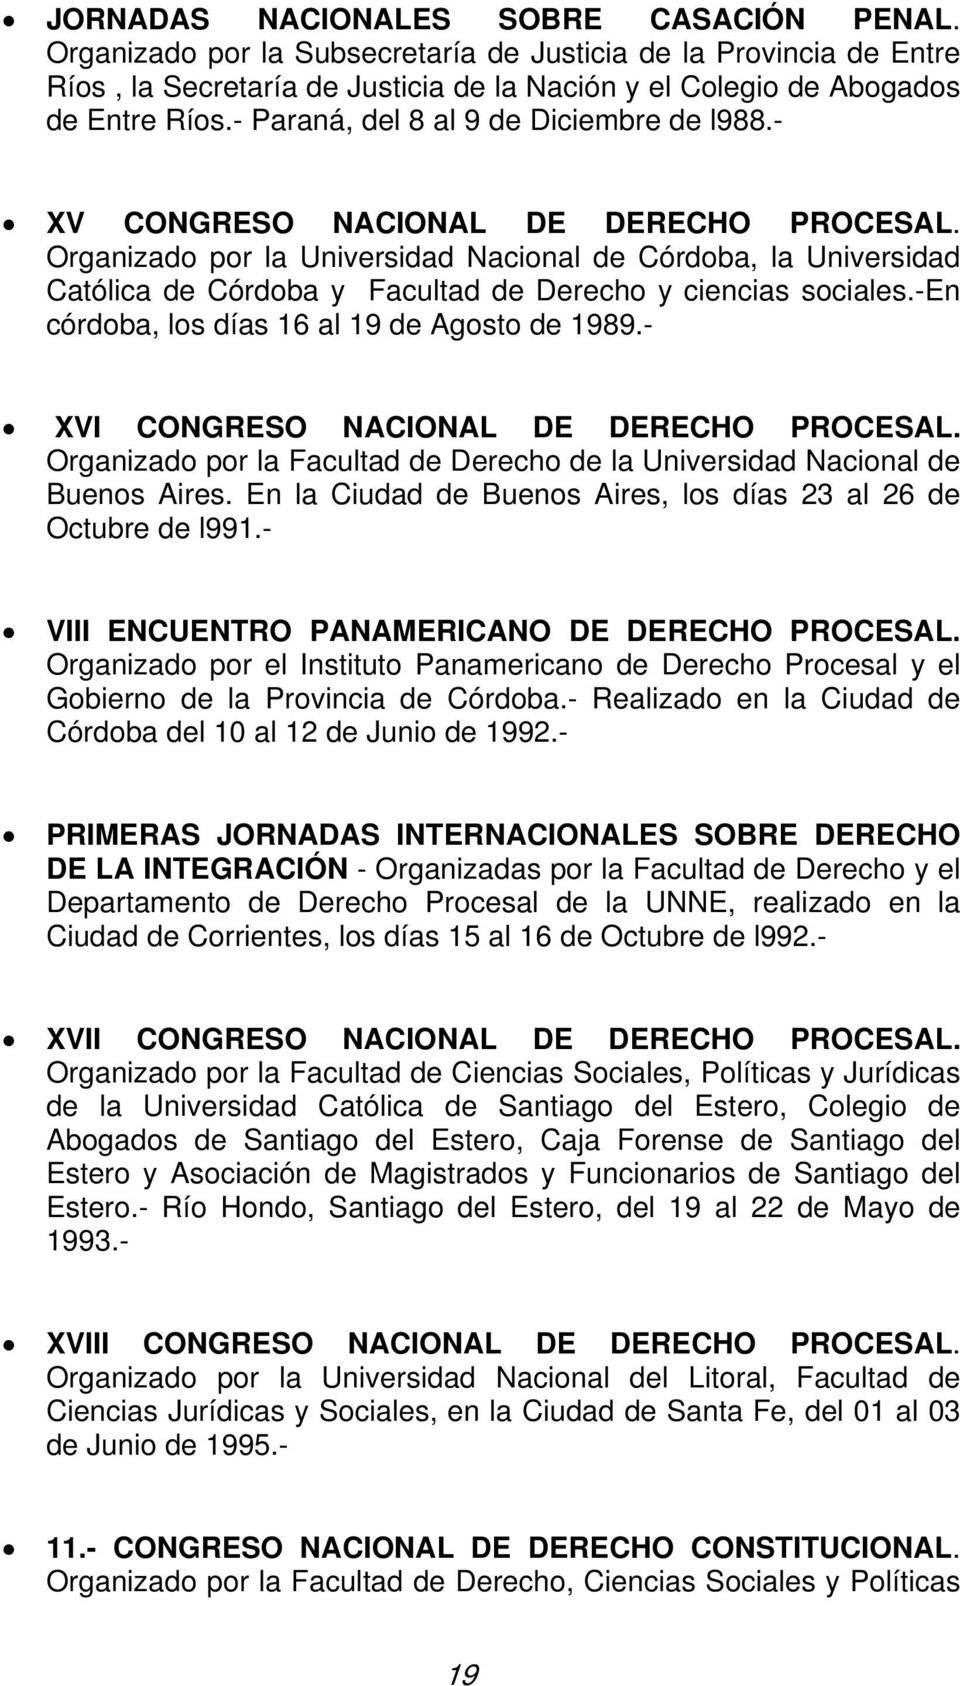 Organizado por la Universidad Nacional de Córdoba, la Universidad Católica de Córdoba y Facultad de Derecho y ciencias sociales.-en córdoba, los días 16 al 19 de Agosto de 1989.